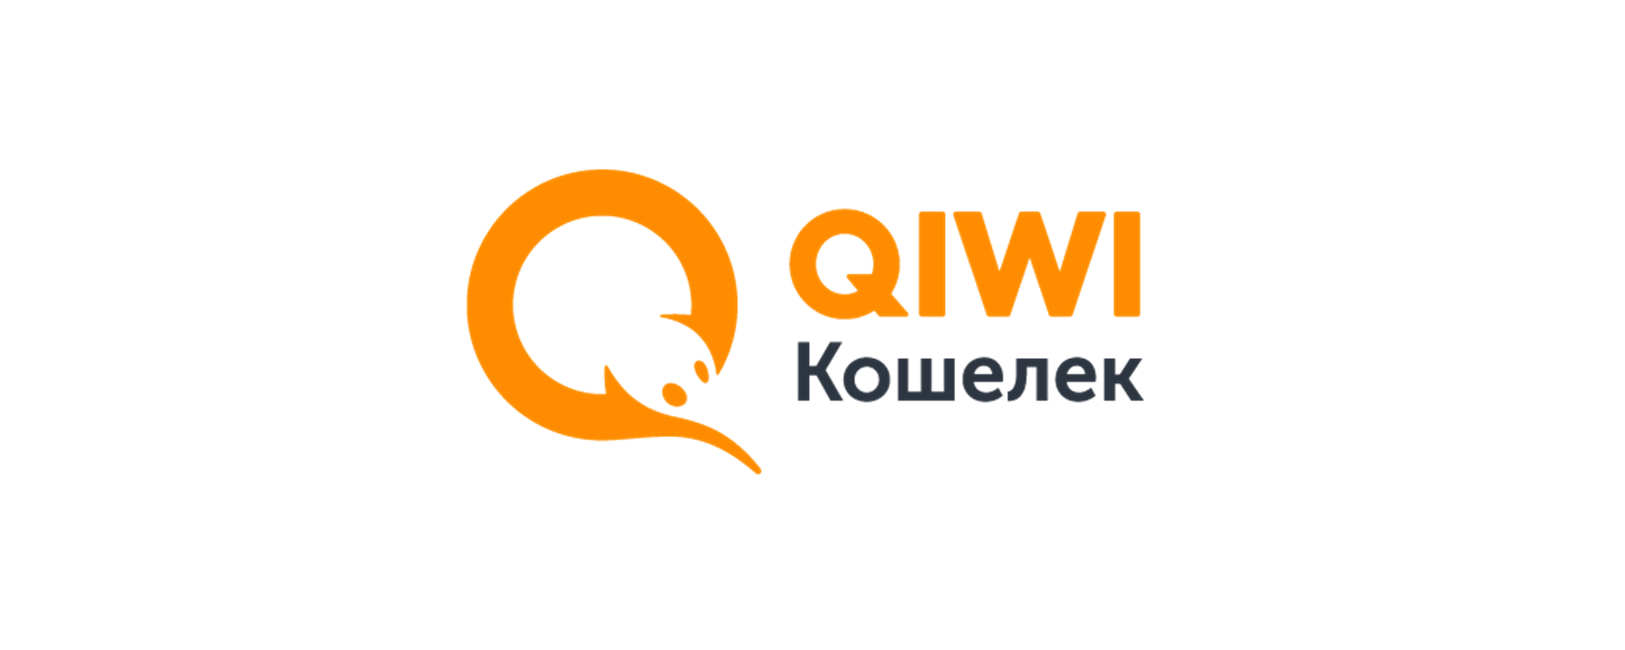 Киви кошелек горячая. QIWI кошелек. Картинки QIWI кошелек. Логотип киви кошелек. Электронная платежная система QIWI.